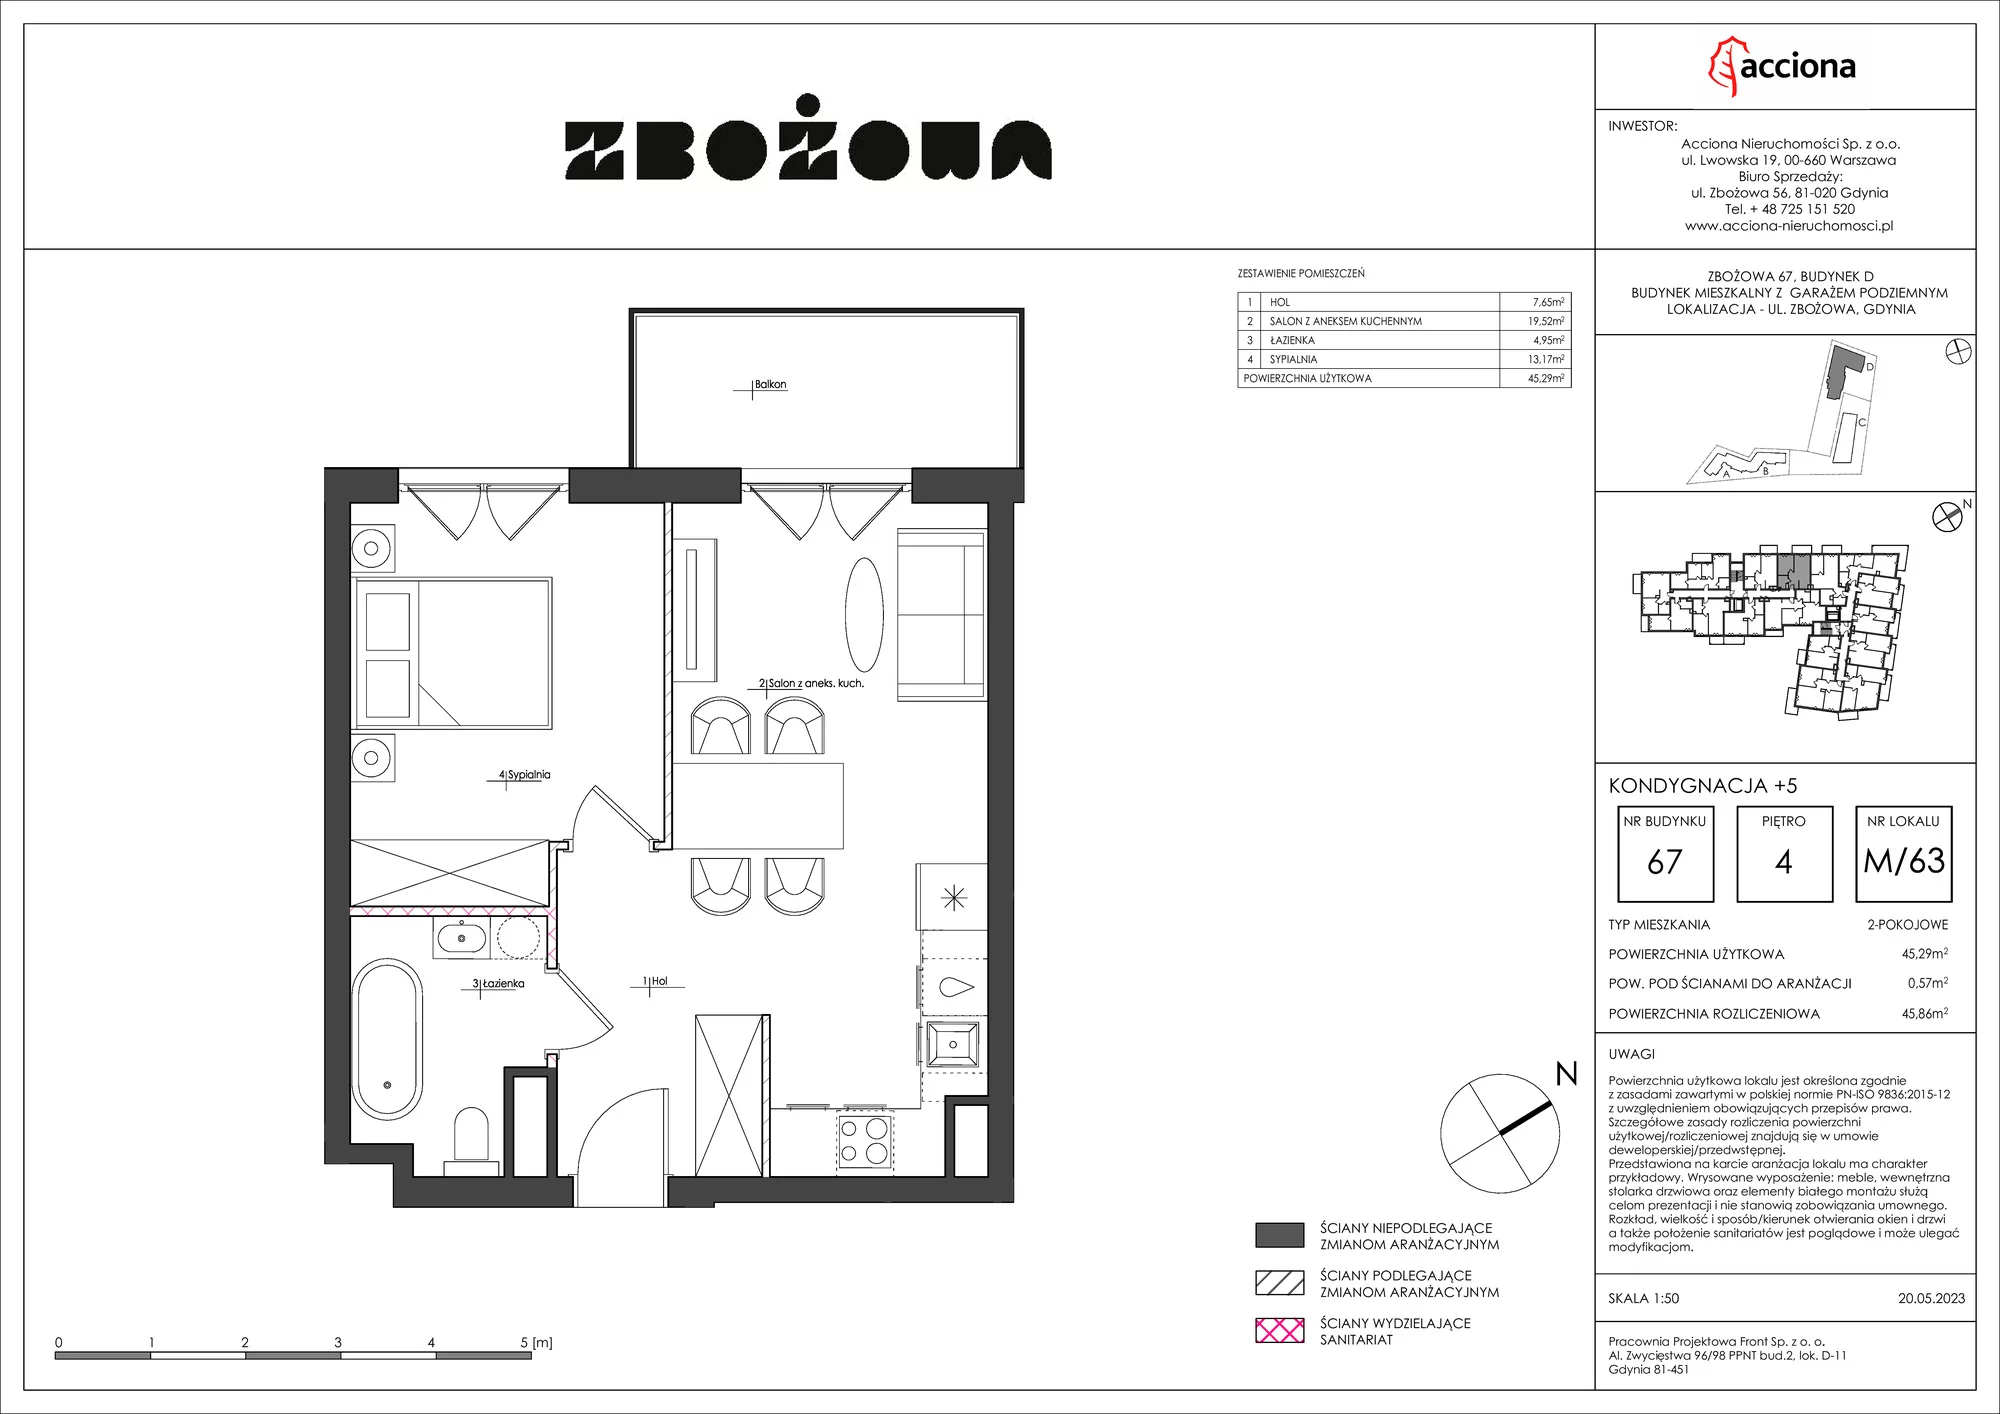 Mieszkanie 45,86 m², piętro 4, oferta nr 67.63, Zbożowa, Gdynia, Cisowa, ul. Zbożowa